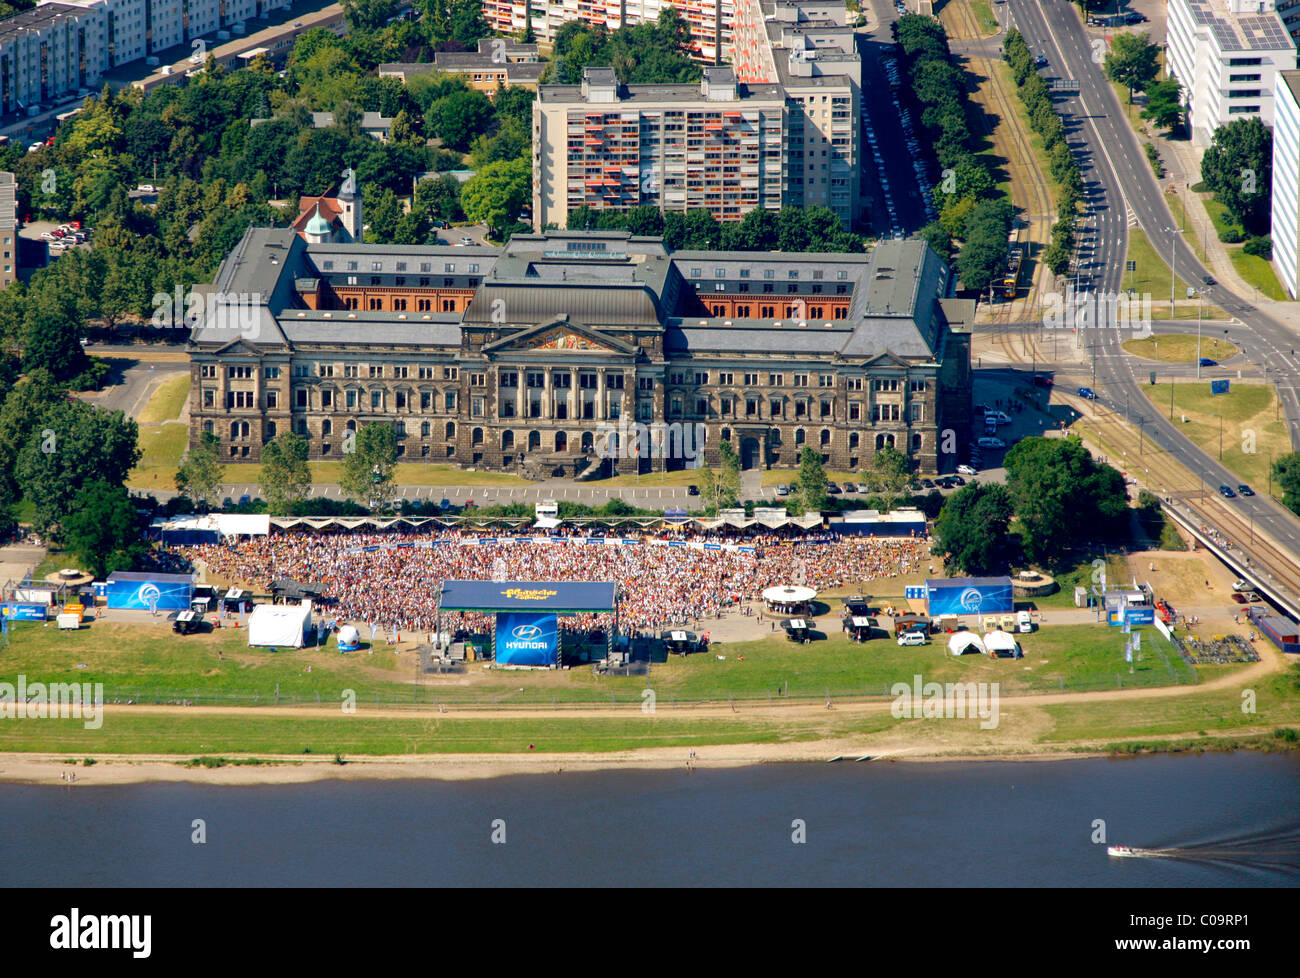 Luftaufnahme, Fußball-Weltmeisterschaft 2010, öffentliche Vorführung auf dem Fluss Elbe, Dresden, Sachsen, Deutschland, Europa Stockfoto